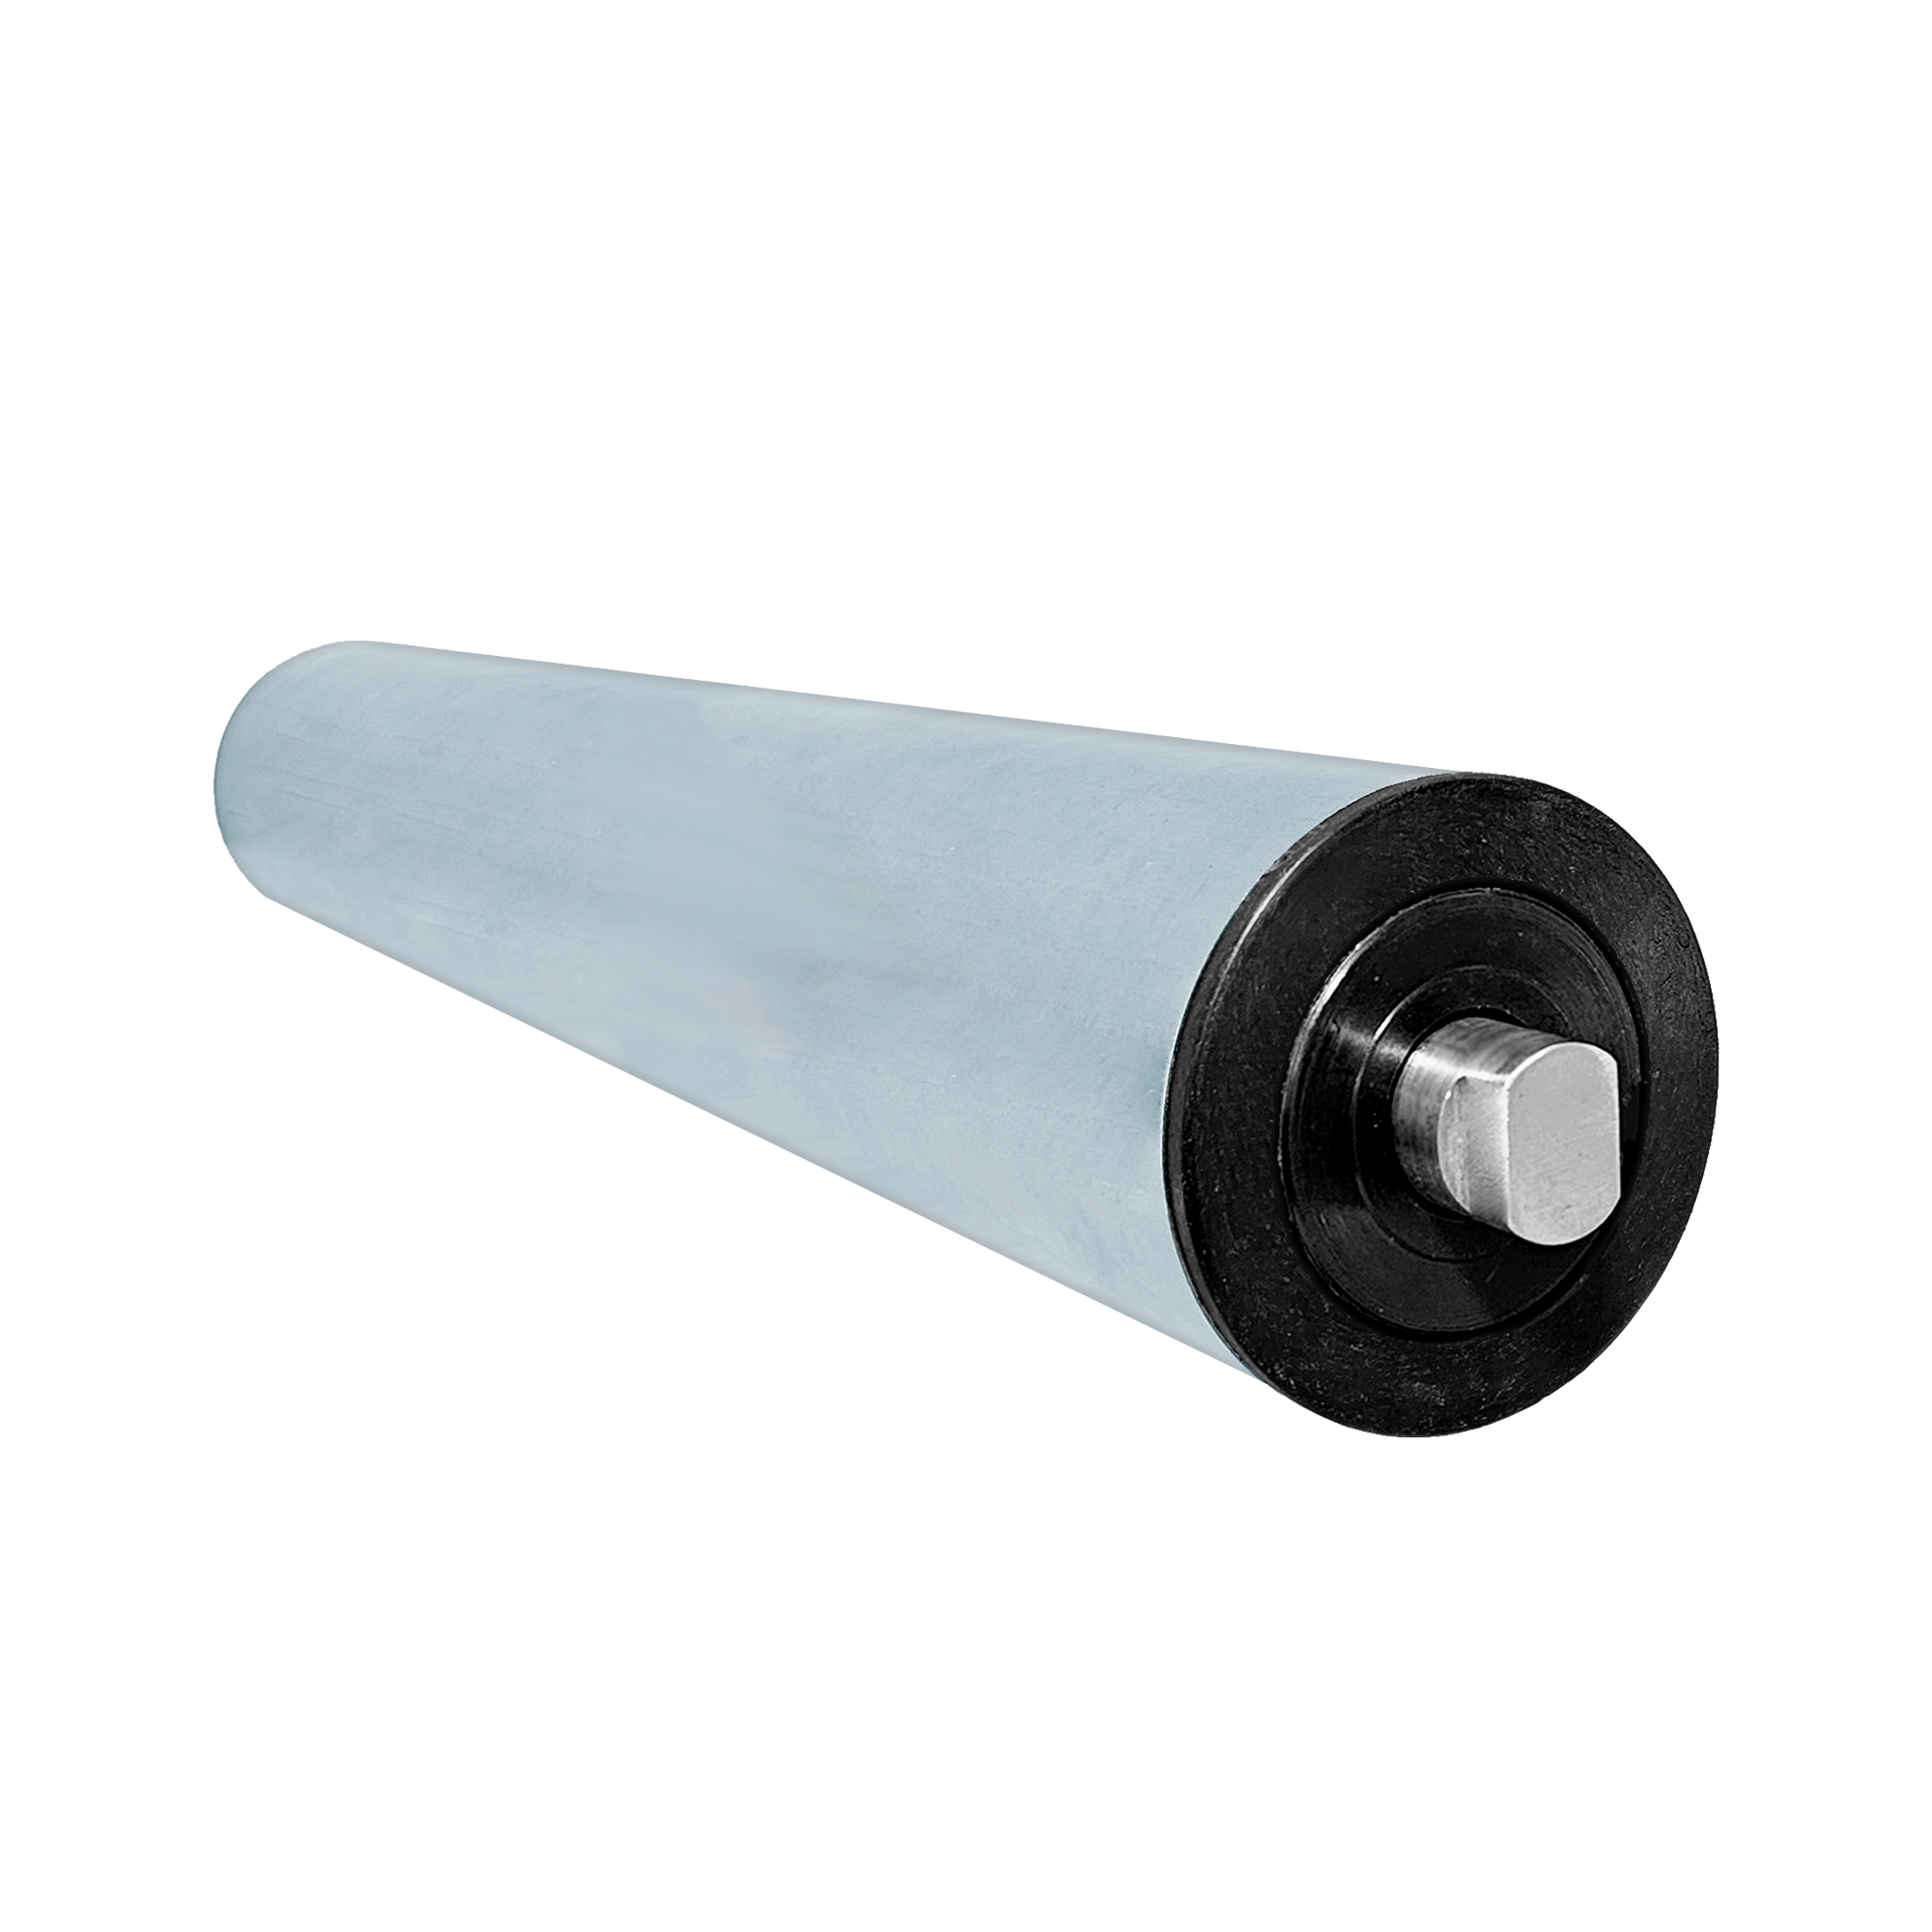 Rolete de Retorno - Diâmetro tubo 76,2 mm - Comprimento tubo 870 mm